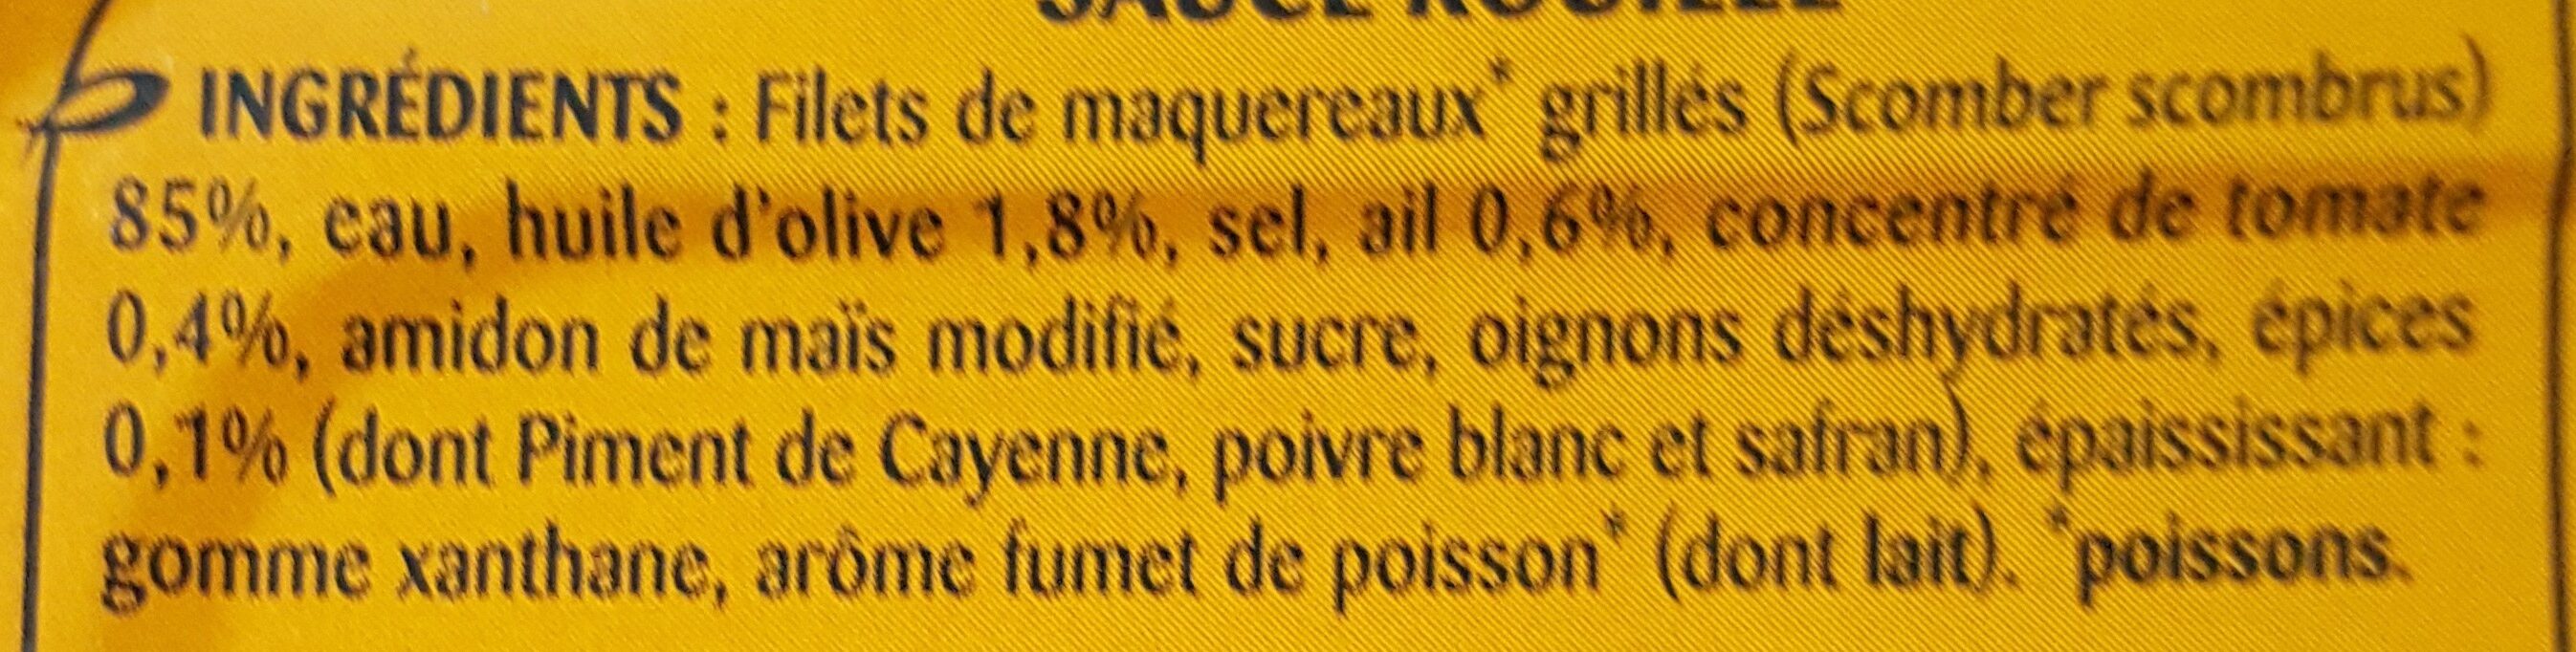 Filets de maquereaux grillés sauce rouille - Ingrediënten - fr